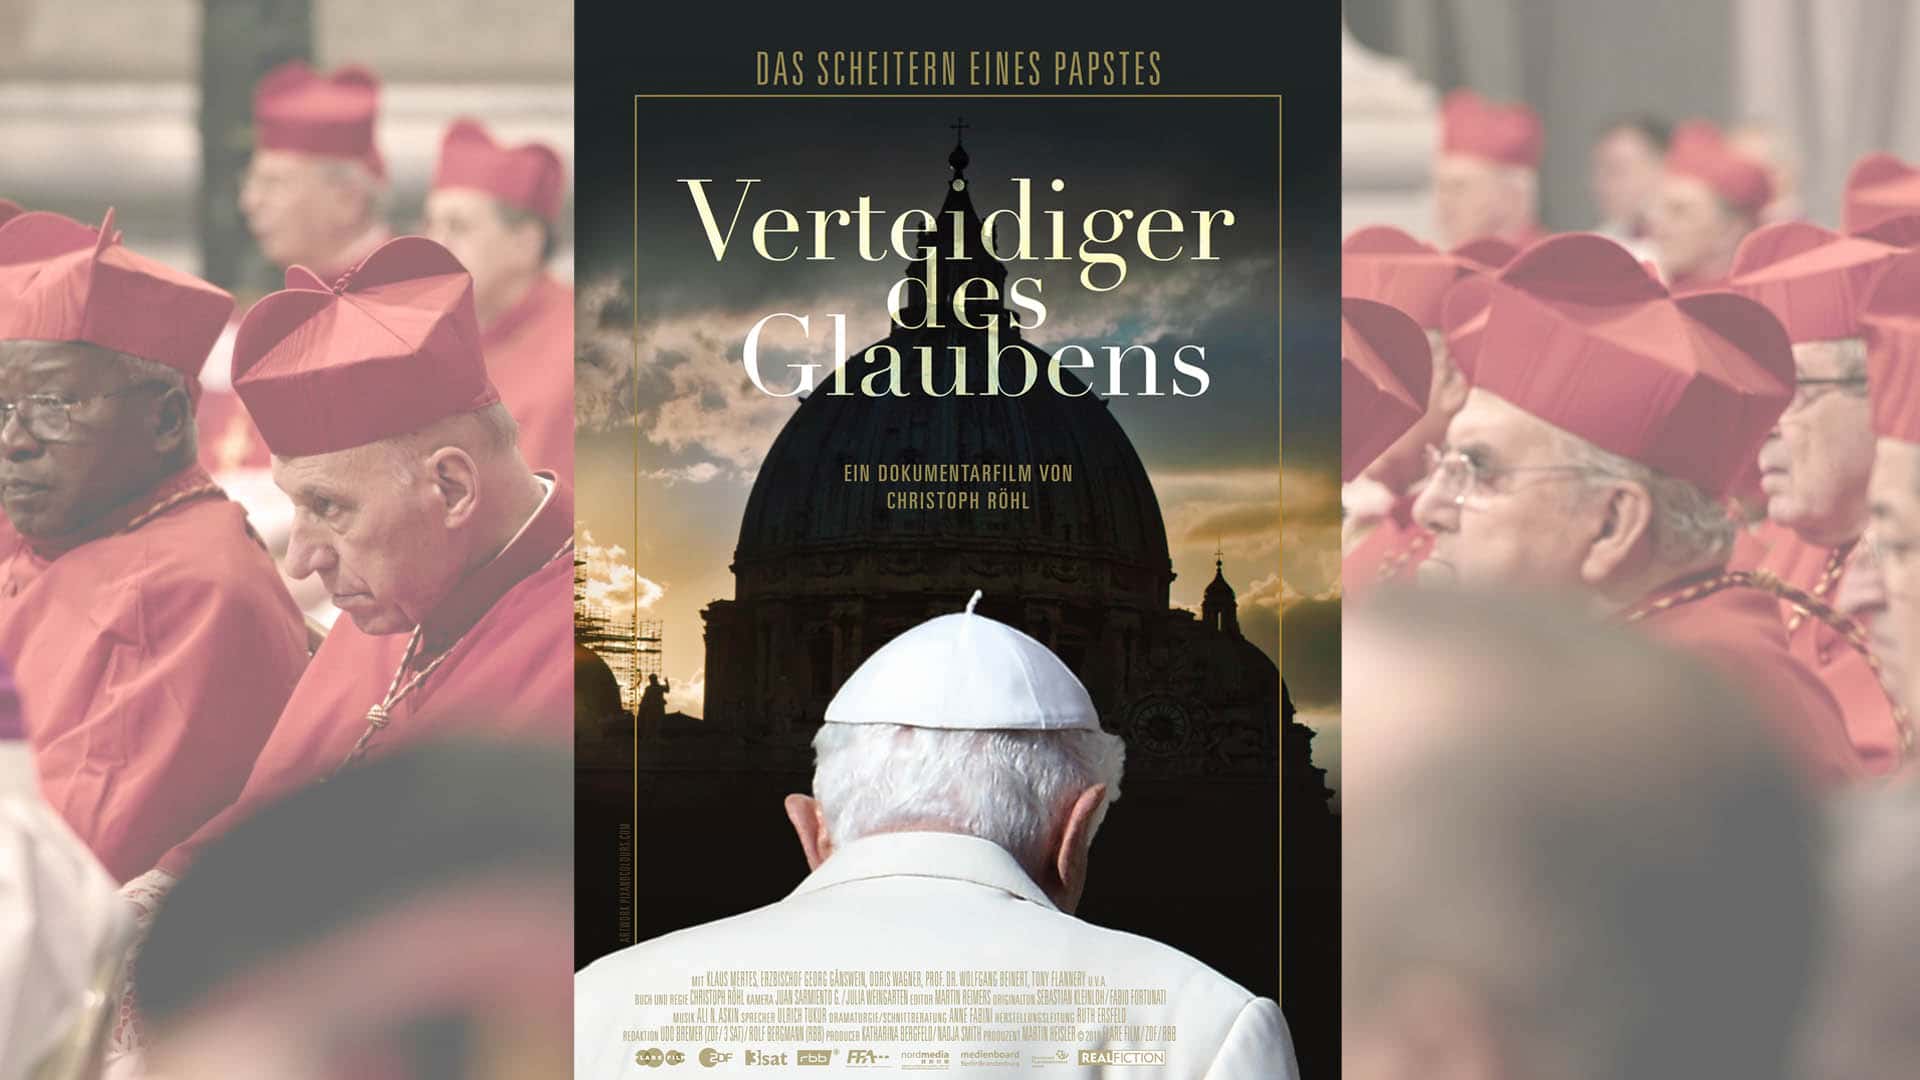 Die kritische, aber äußerst sehenswerte Dokumentation „Verteidiger des Glaubens“ startet am 31. Oktober 2019 in den deutschen Kinos